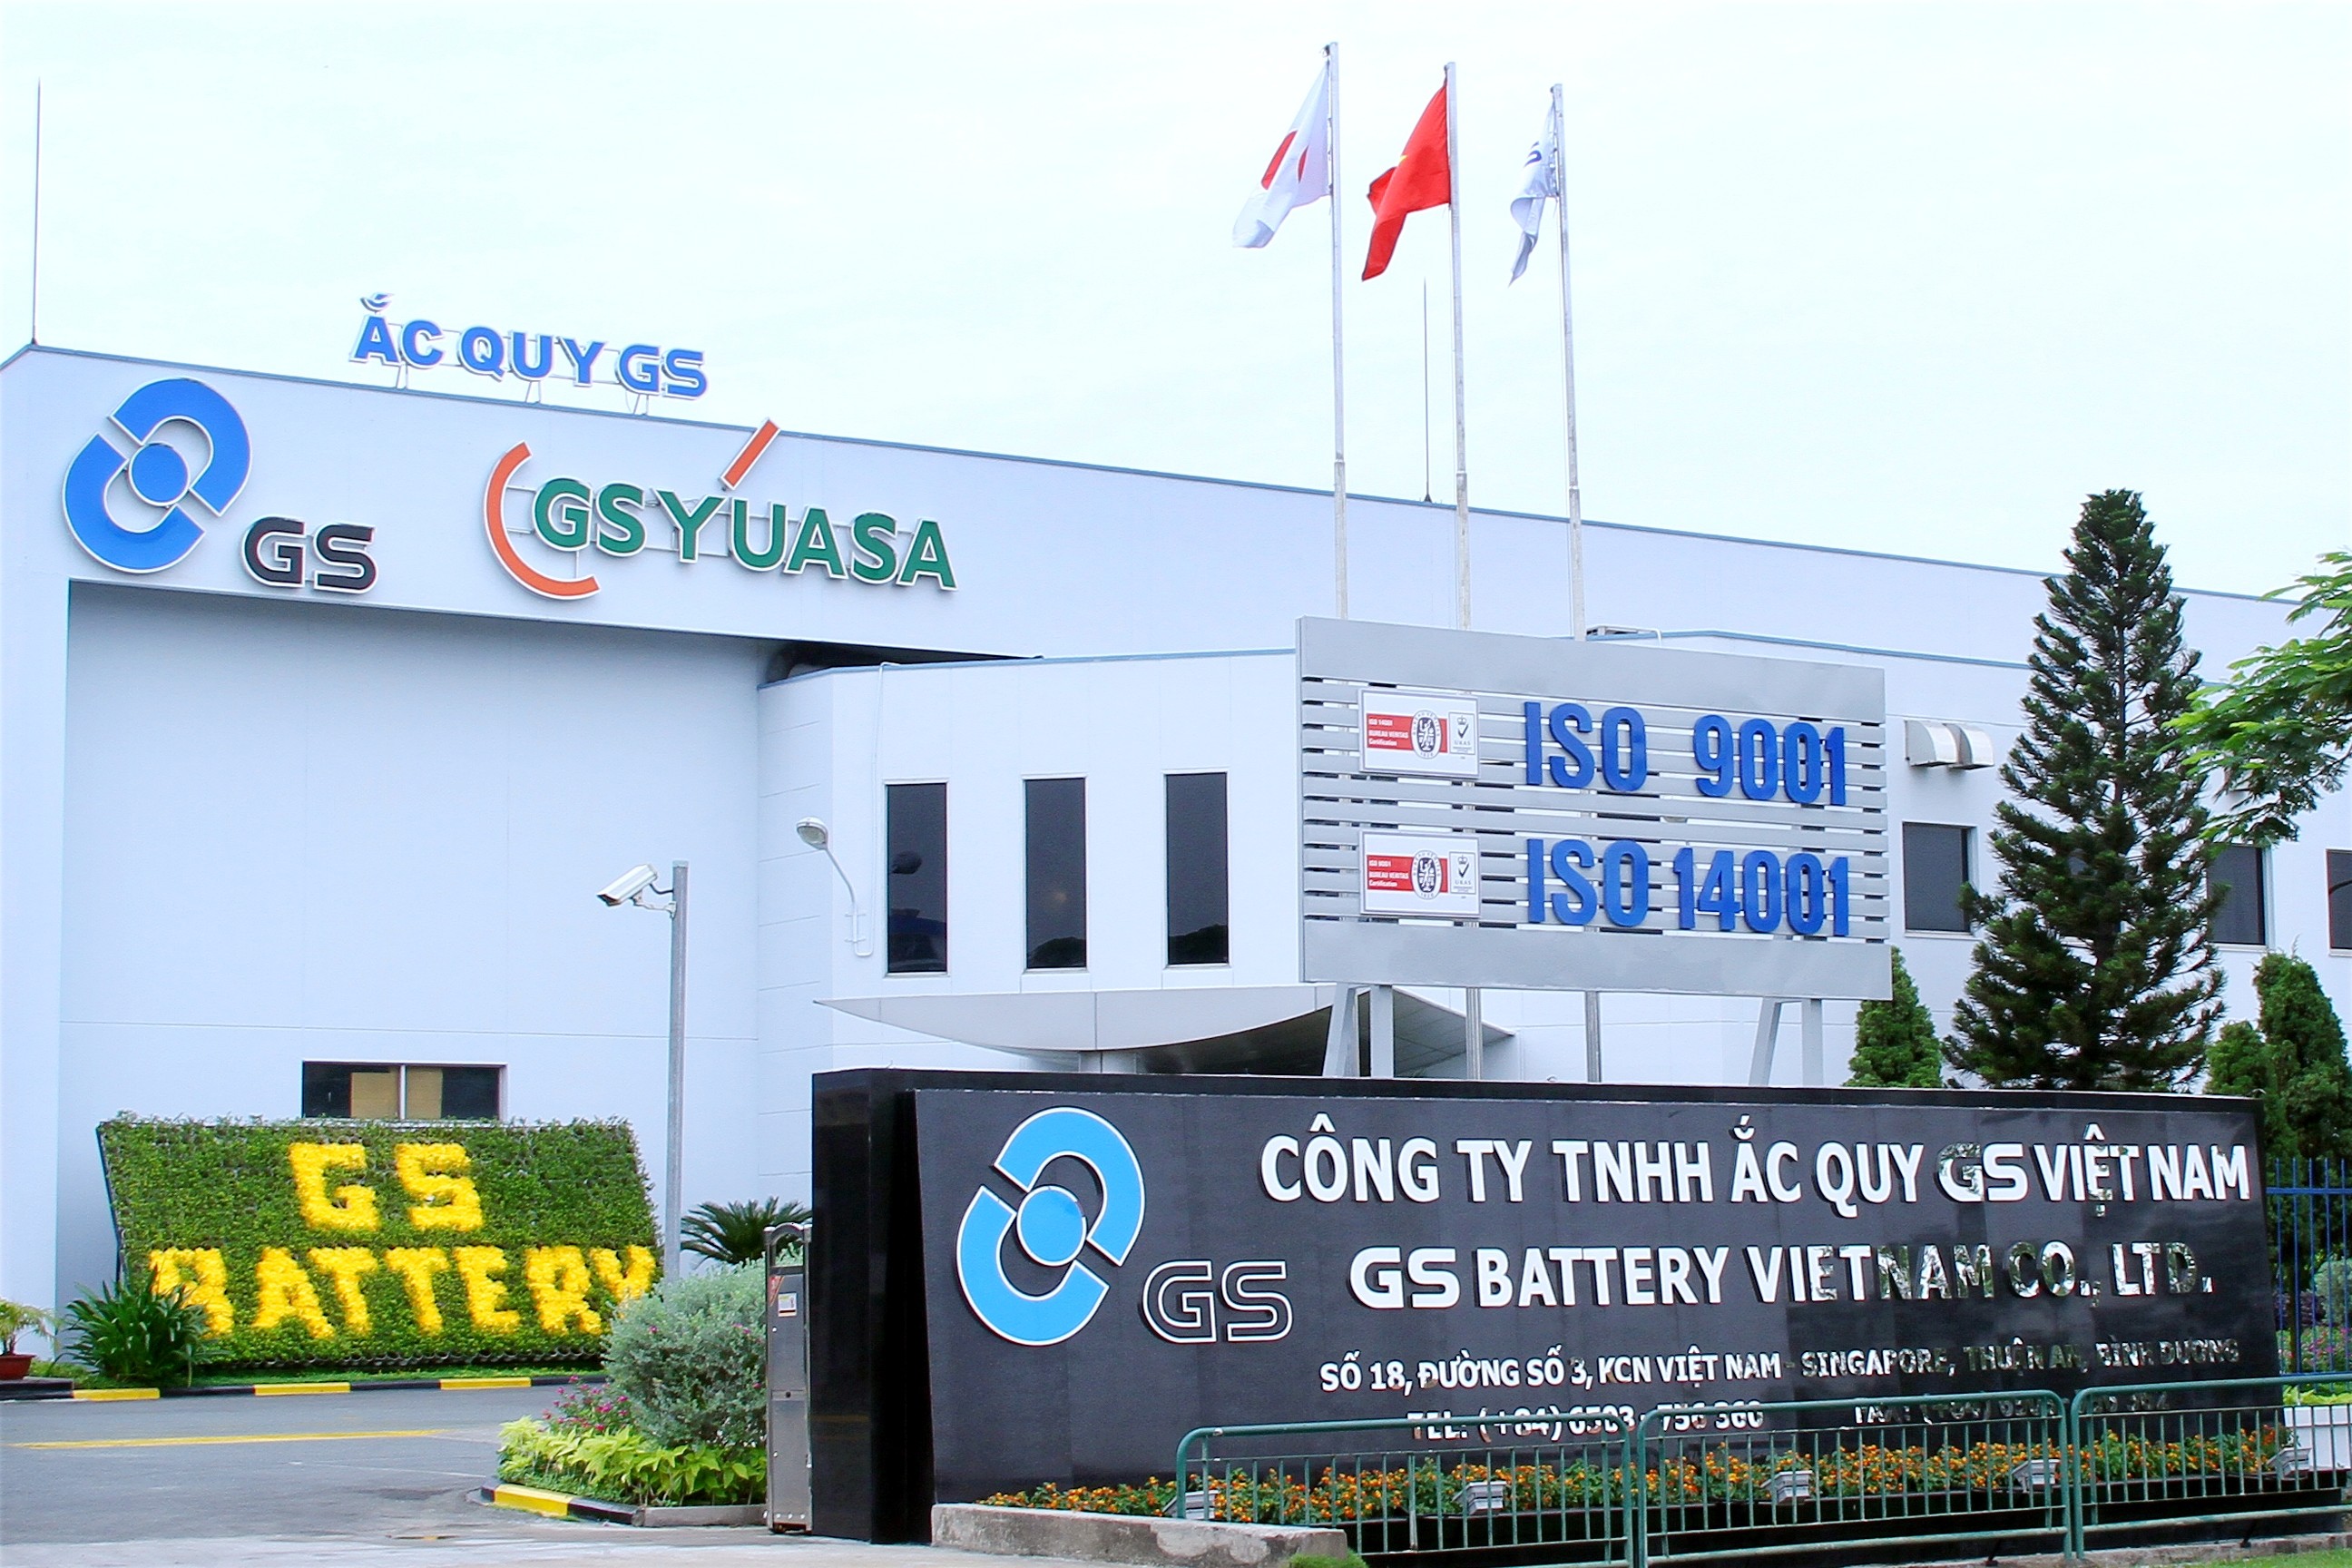 Từ ngày 20/11/2013, Công TY TNHH Ắc Quy GS Việt Nam chính thức sử dụng cổng mới và thiết lập logo GS Yuasa bên cạnh logo GS trên nền biểu tượng bộ mặt của công ty.